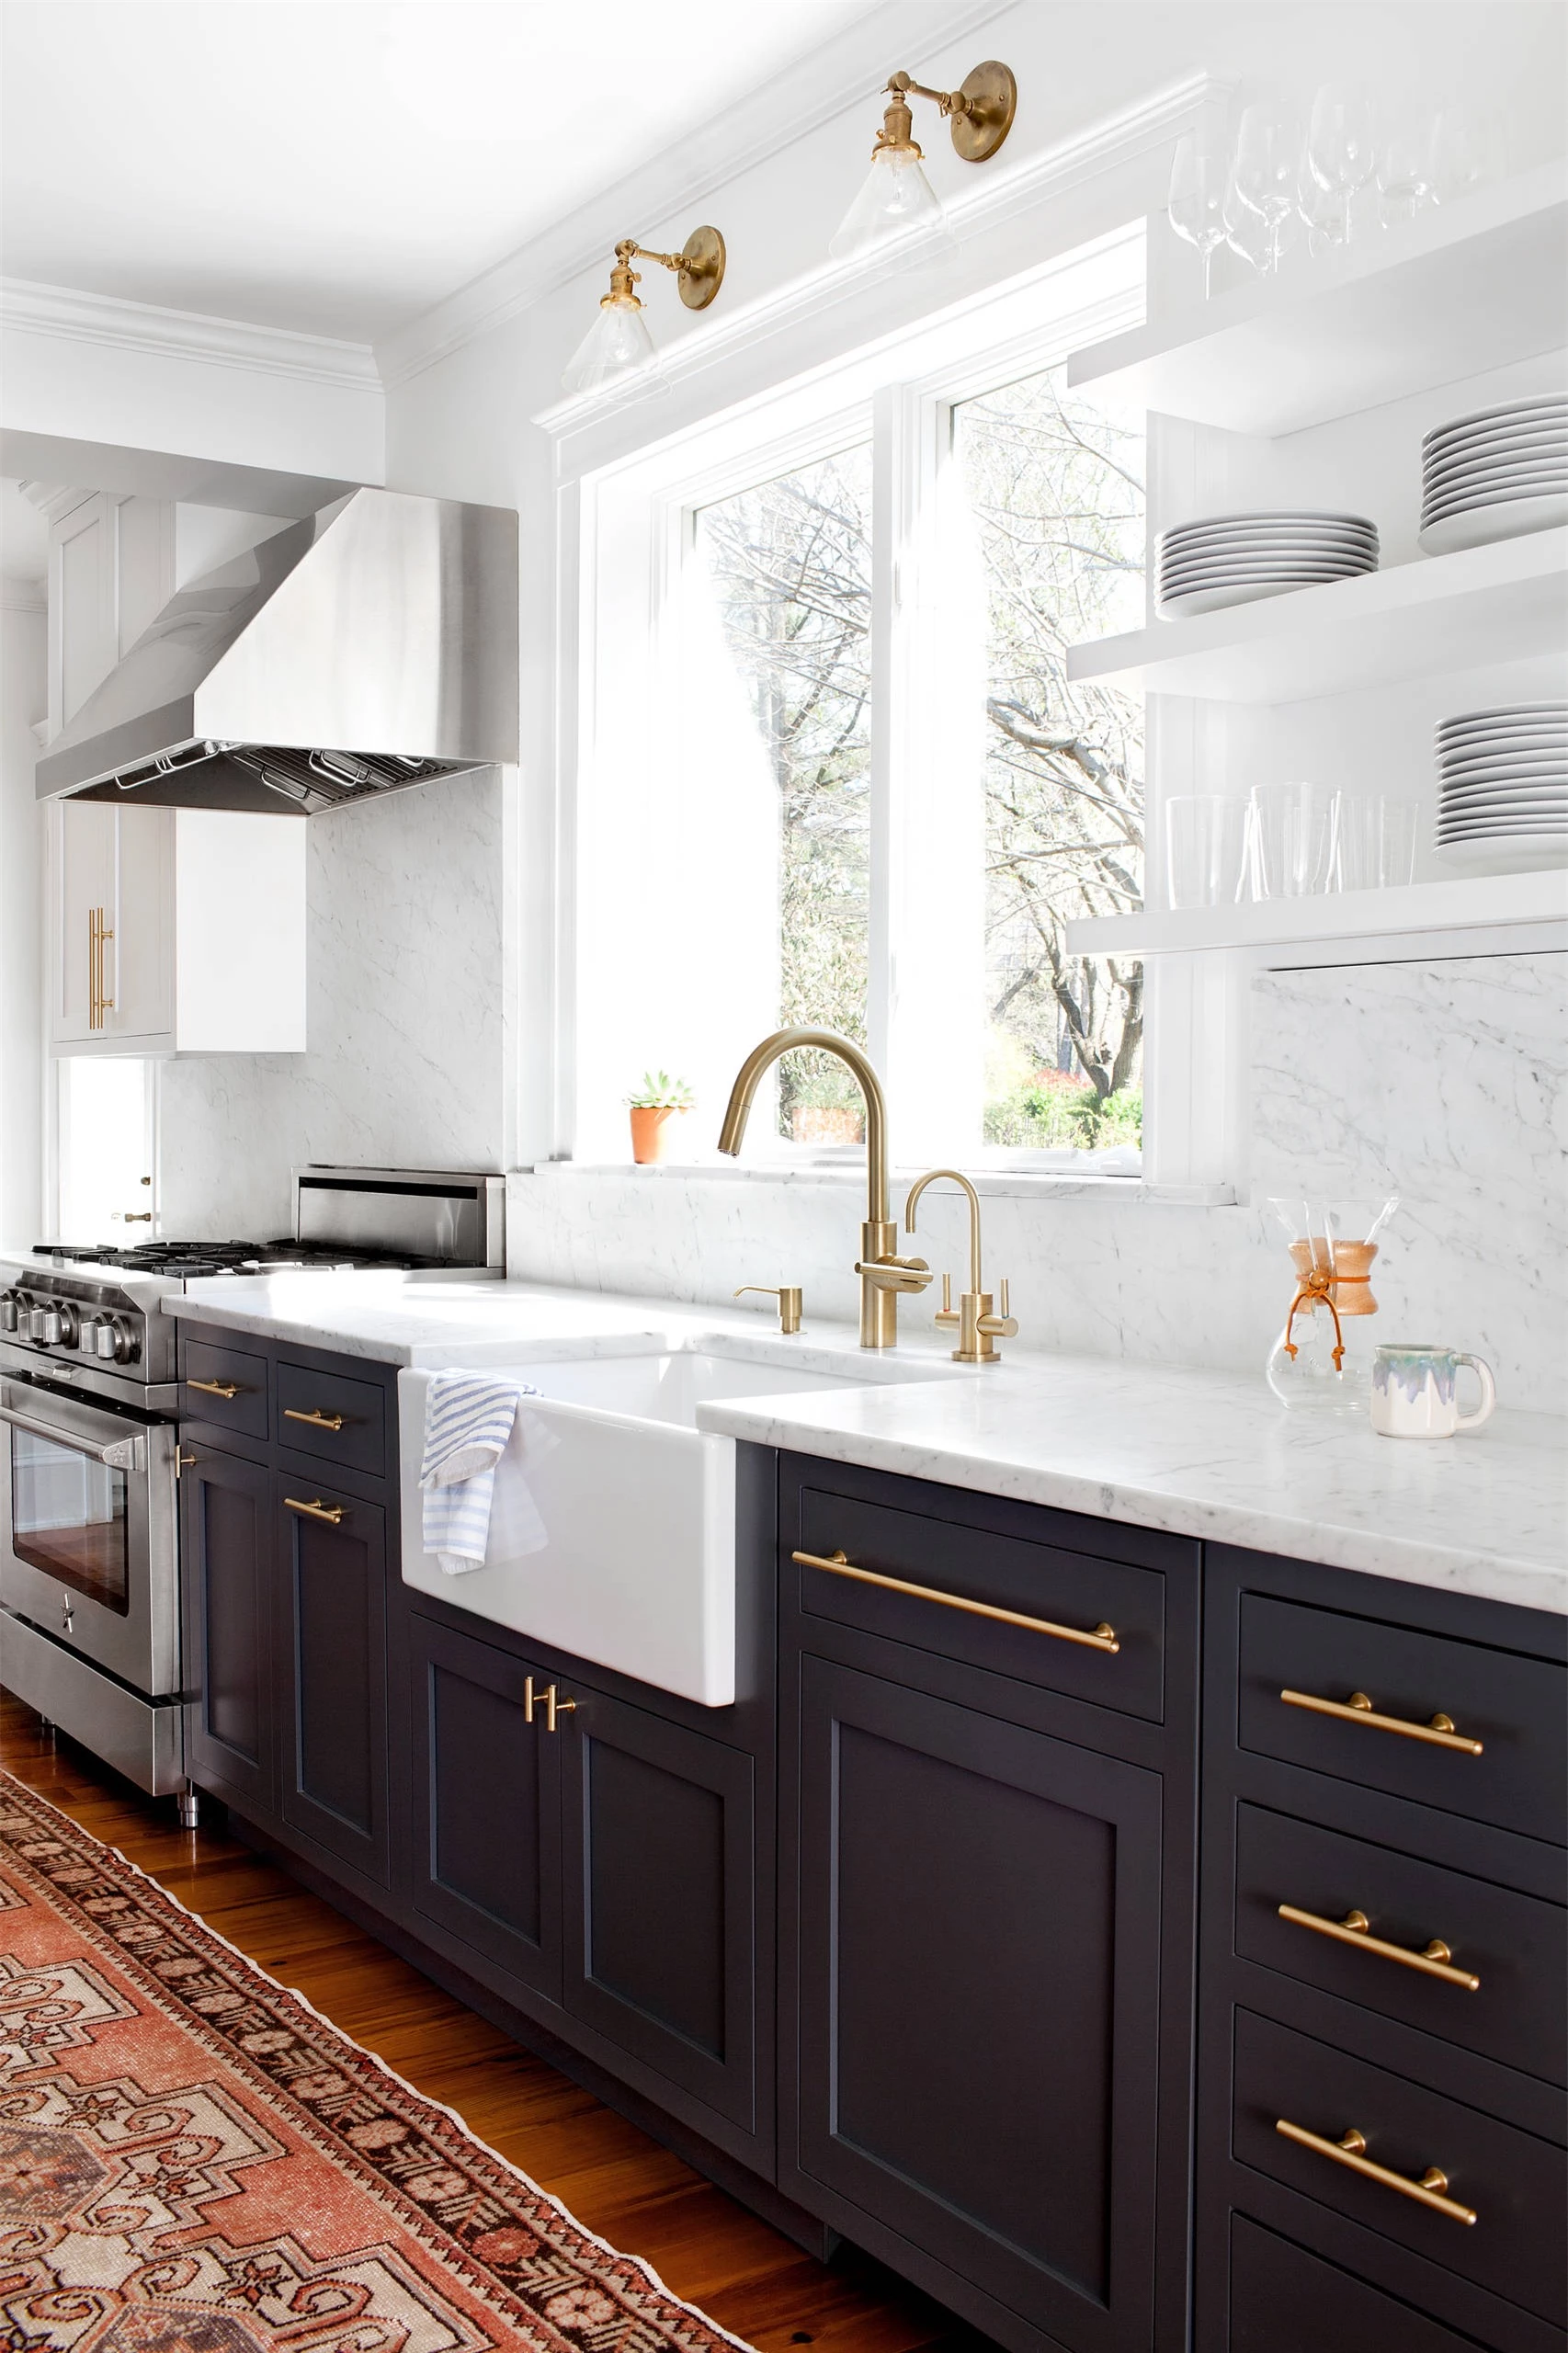 Những ý tưởng thiết kế siêu dễ giúp bạn sở hữu căn bếp đẹp mơ màng ấn tượng - Ảnh 3.